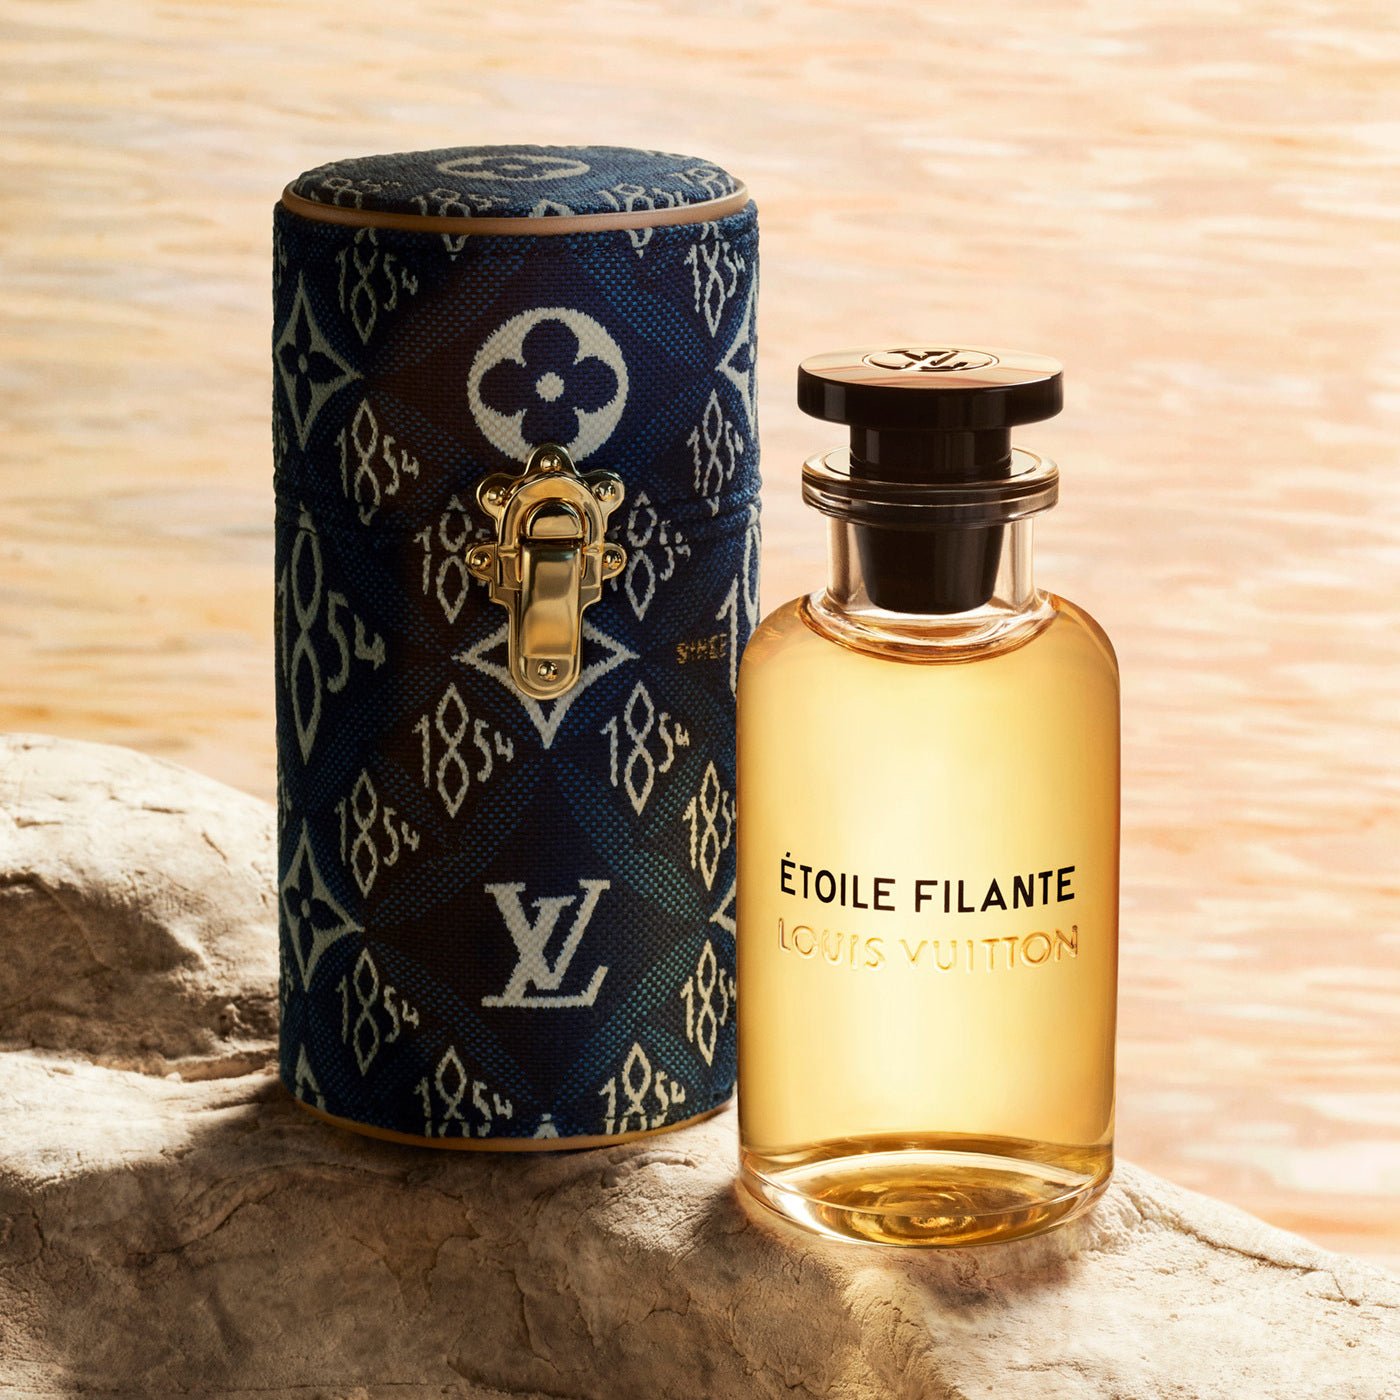 Louis Vuitton Etoile Filante EDP | My Perfume Shop Australia